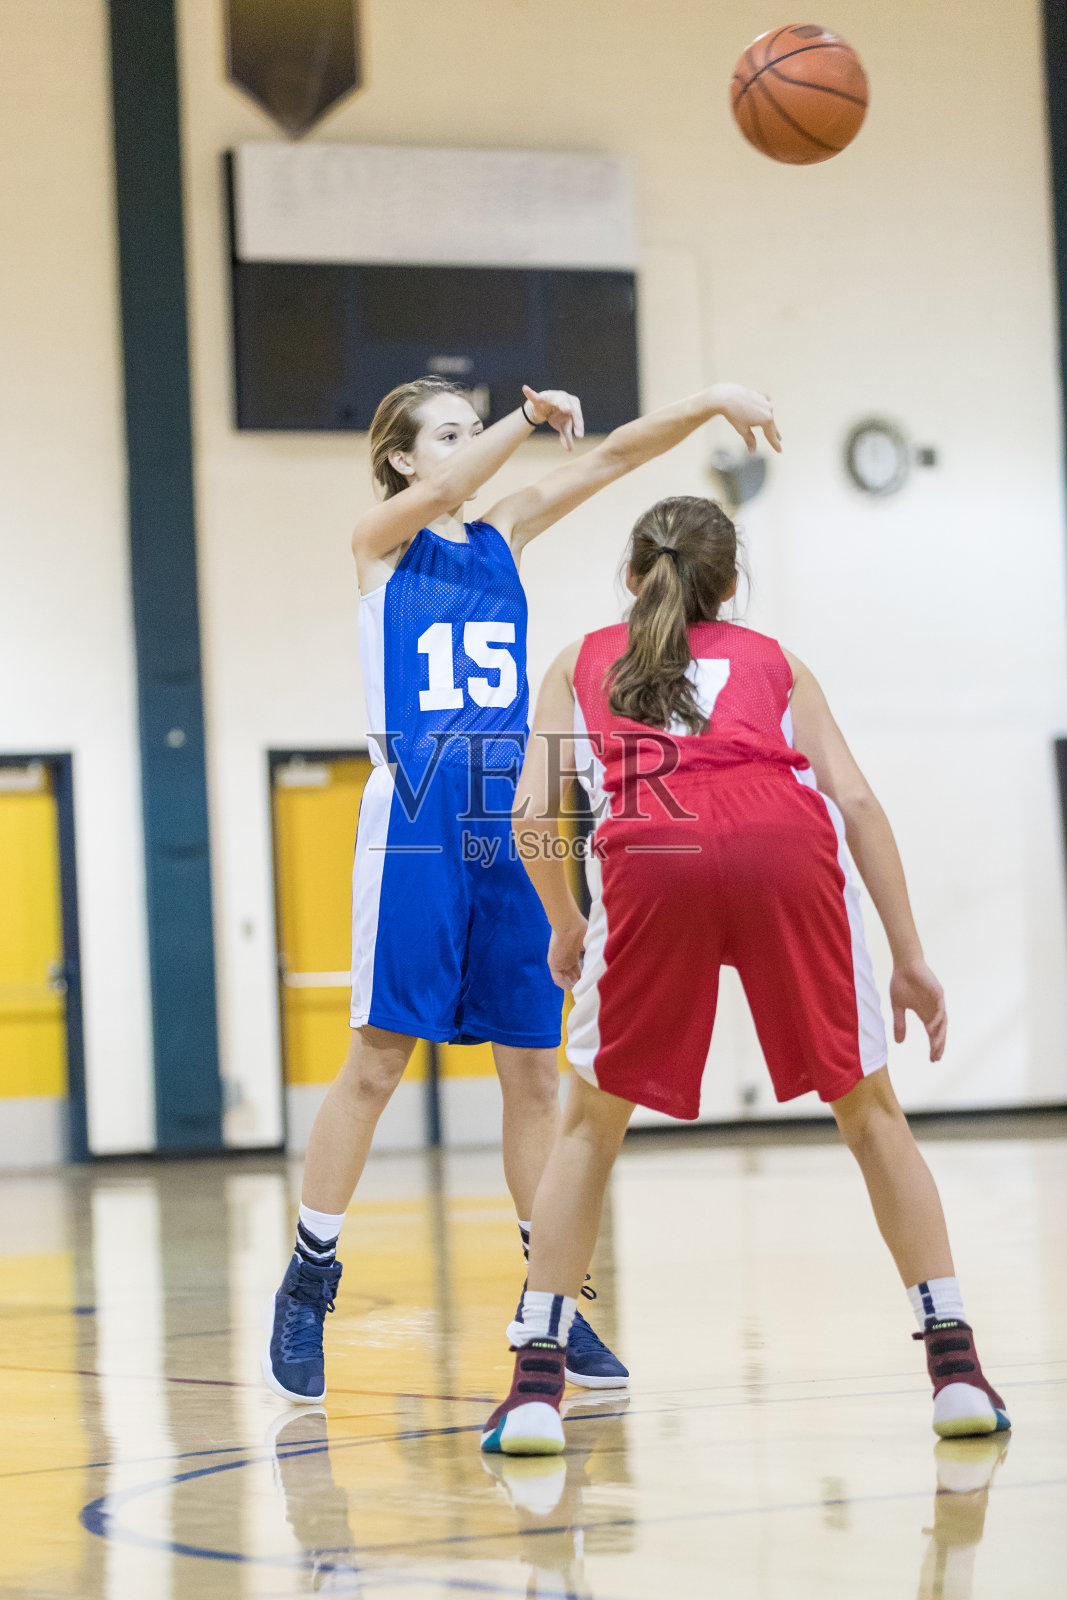 少女女子篮球运动员运球在关键的顶部照片摄影图片